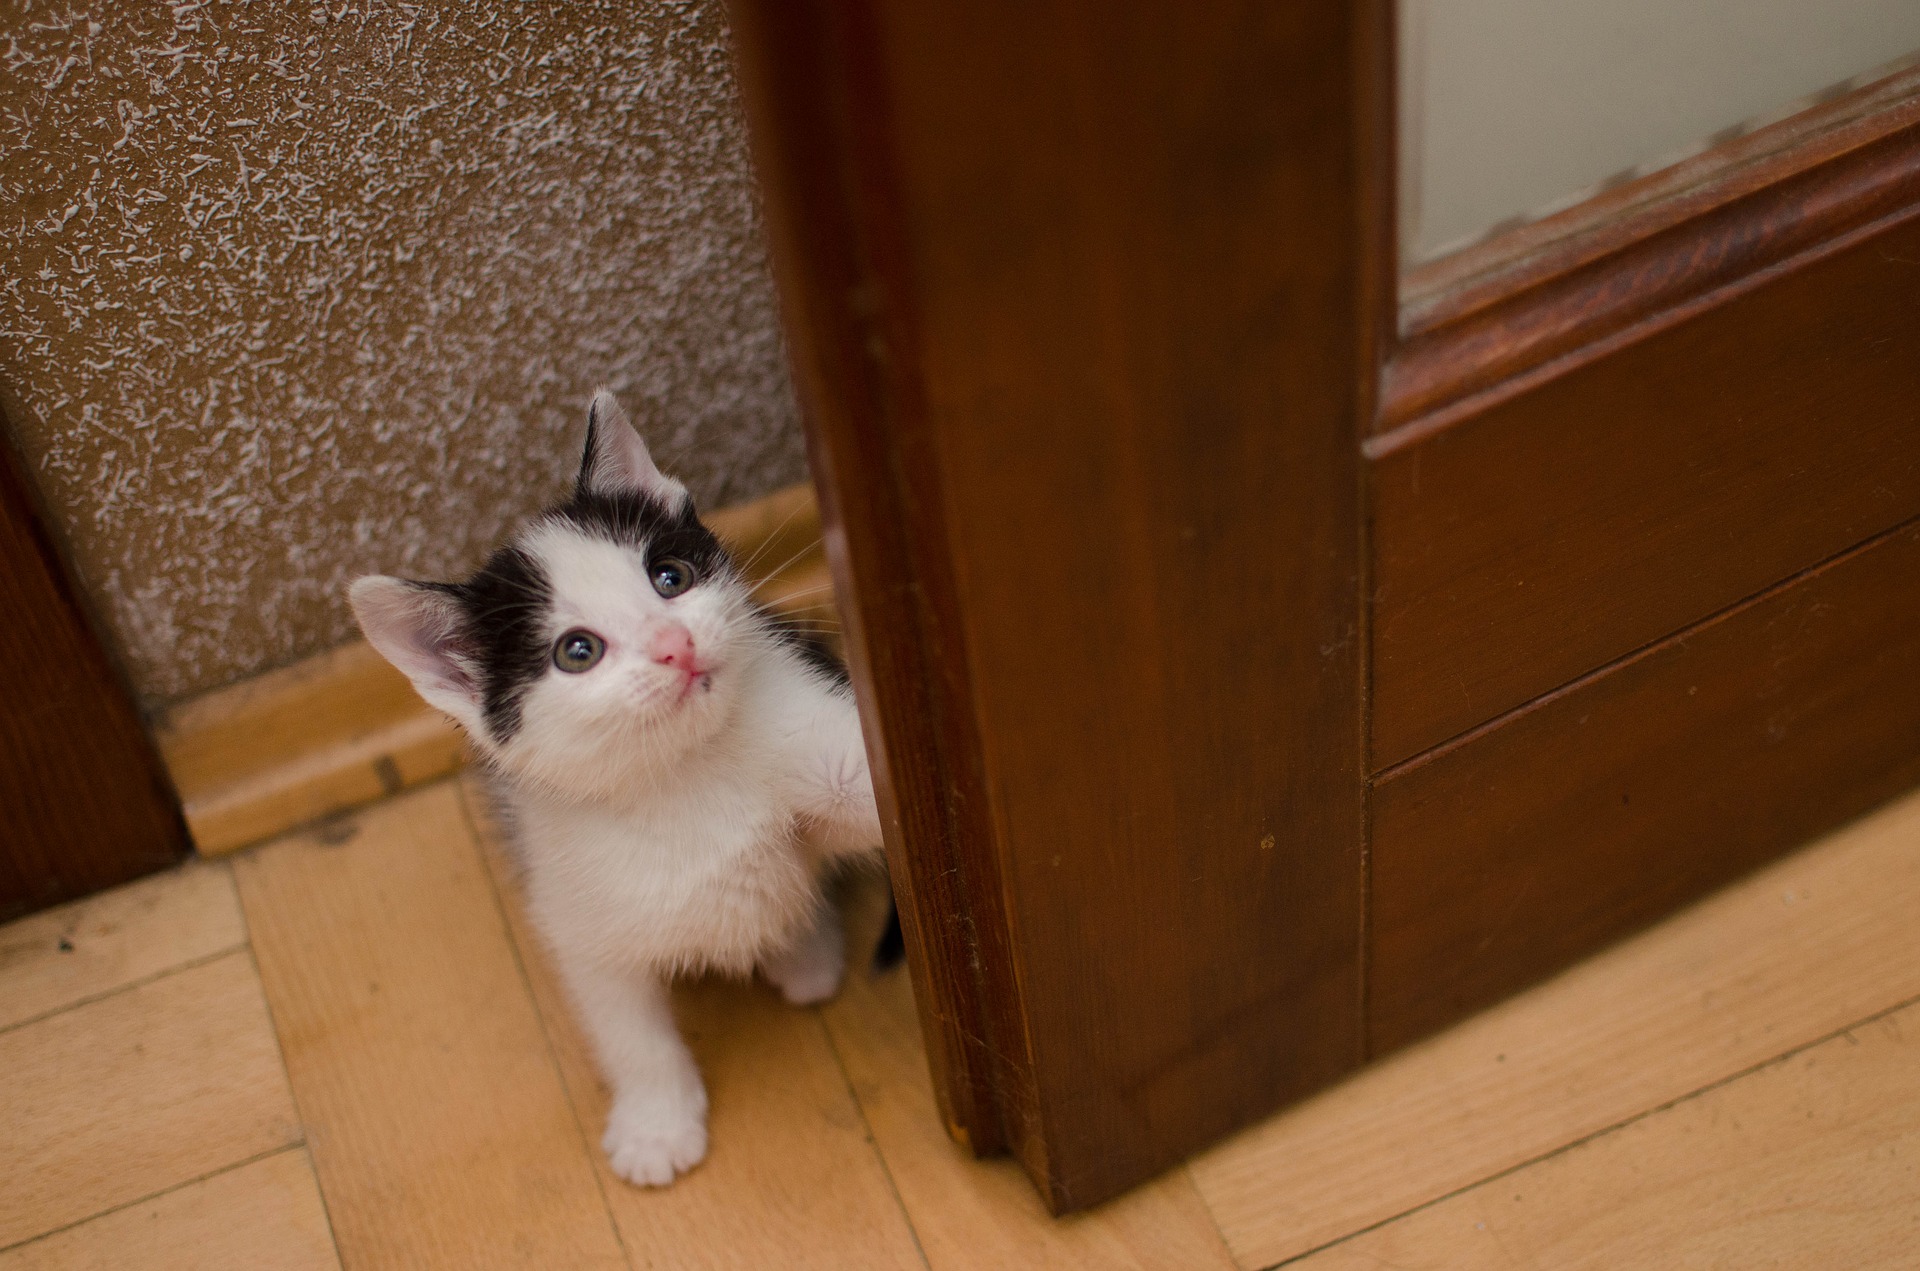 Wenn eine kleine Katze den Weg an einen neuen Ort findet, hat sie normalerweise Angst. Er kann sich hinter der Couch verstecken und mehrere Stunden bleiben oder nur dann mehrere Tage gehen, wenn niemand in der Nähe ist. Es darf nicht mit Gewalt entfernt werden.